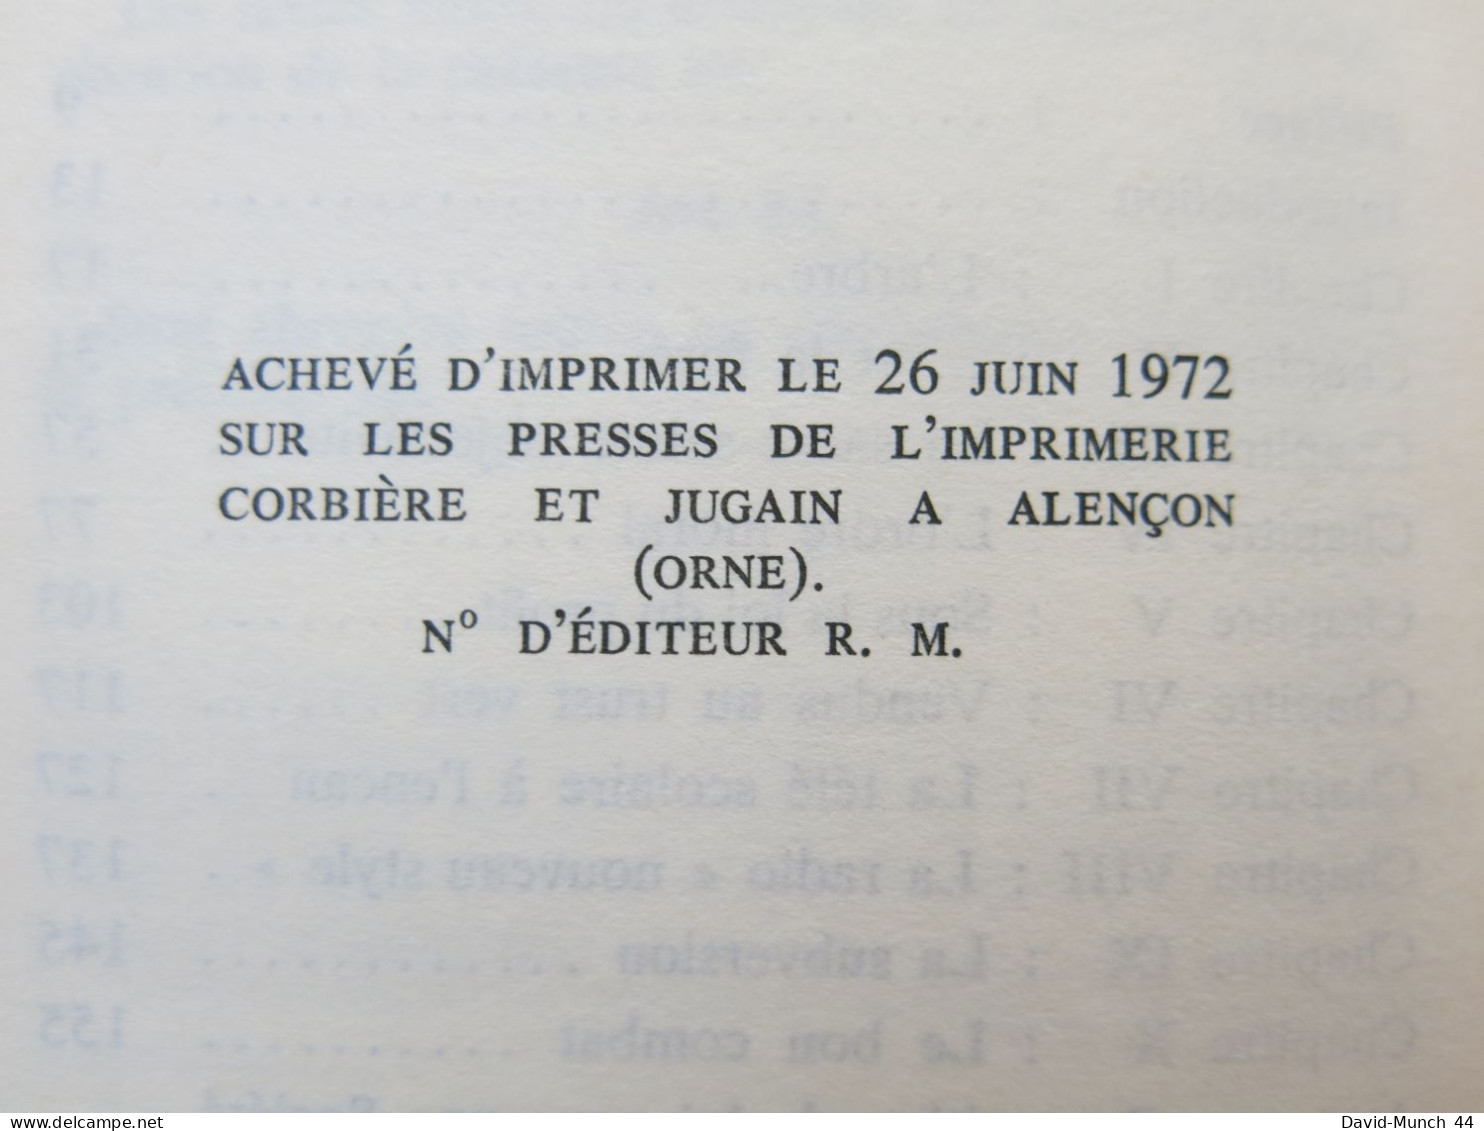 Scandales à l'ORTF de Jerome Favard & Jean Rocchi. Le Pavillon, Roger Maria éditeur. 1972